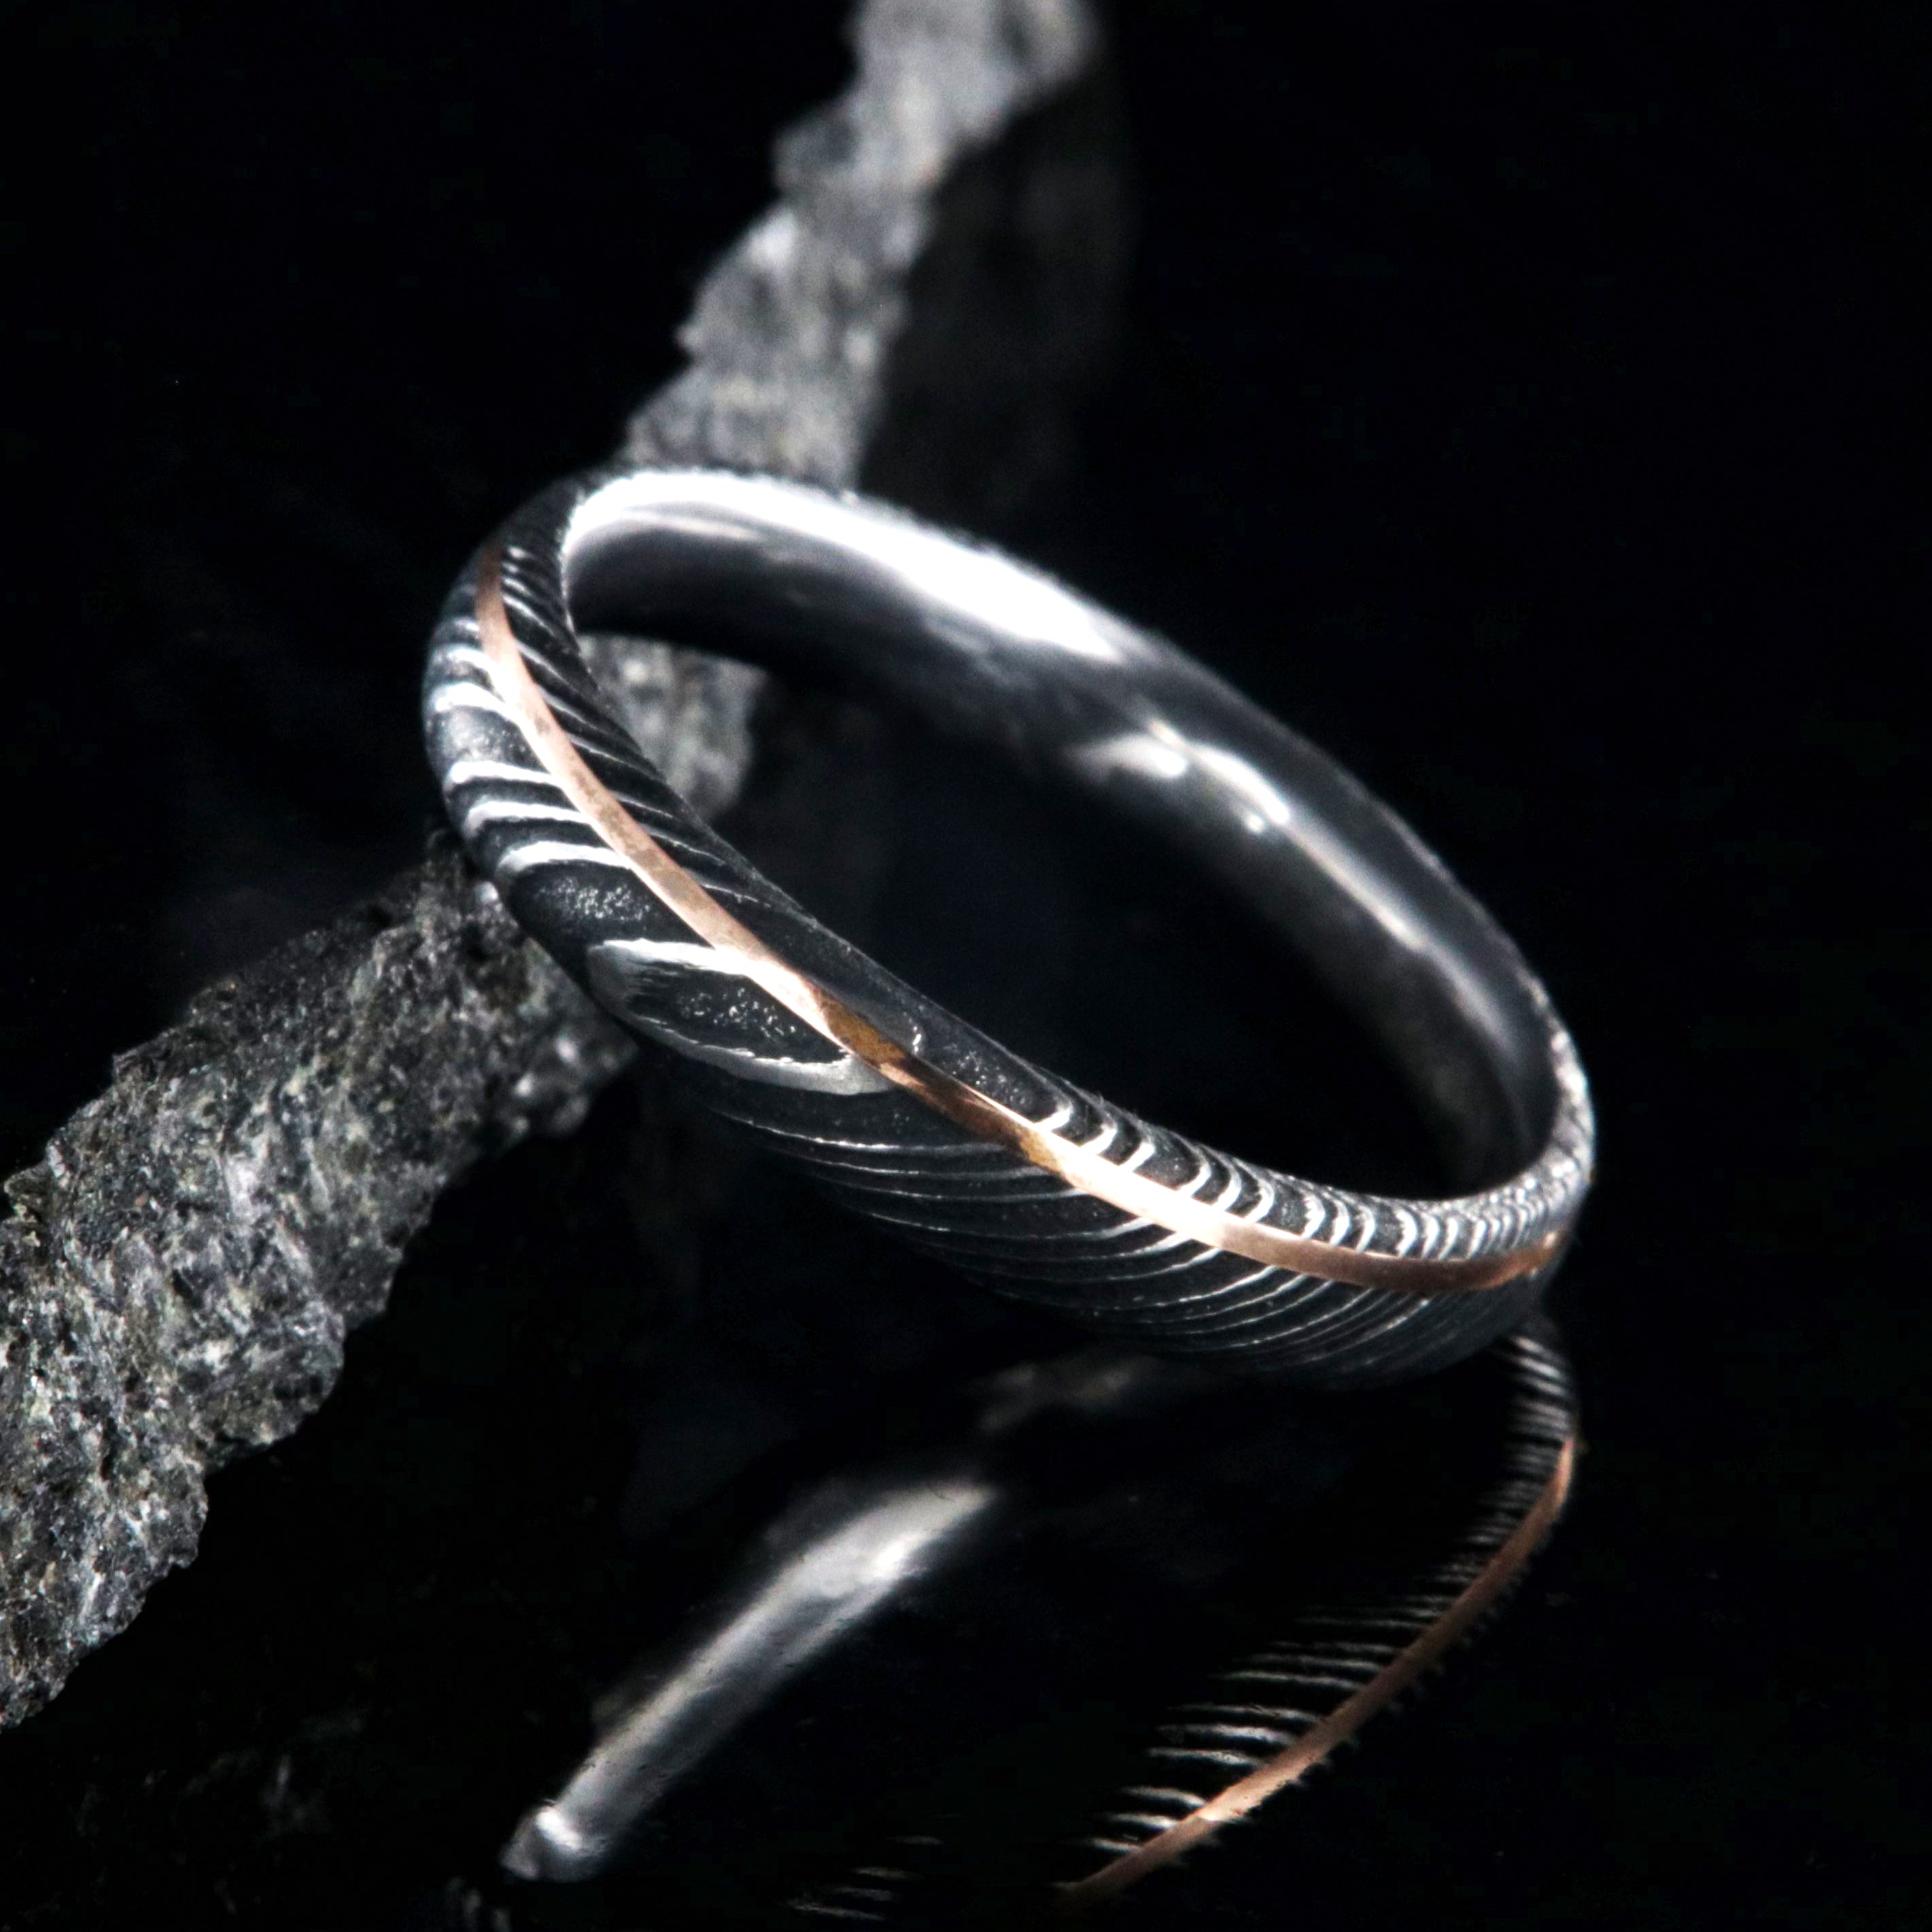 Damascus Steel Wedding Ring | Matching Wedding Rings | The Writers